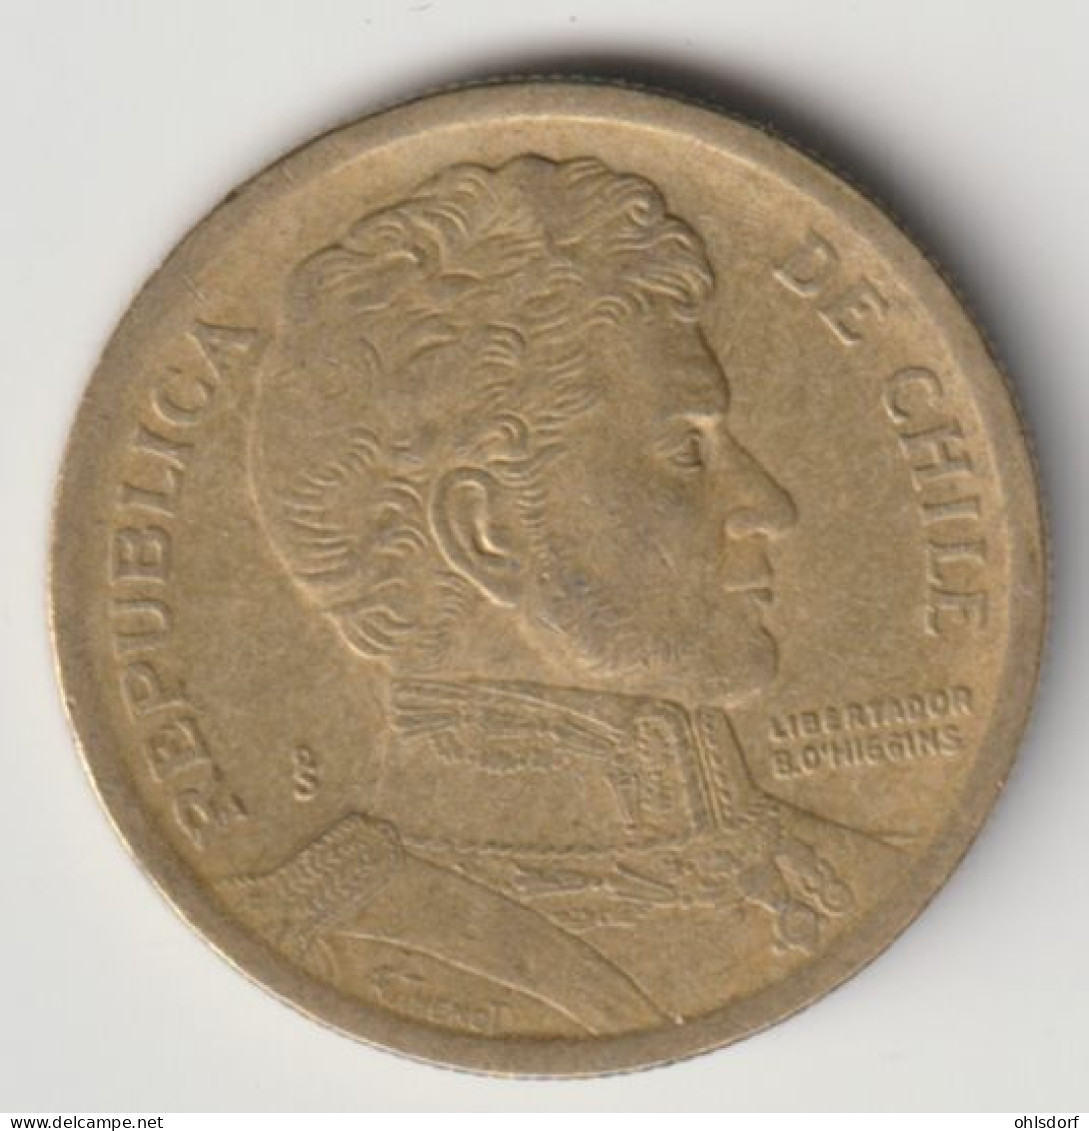 CHILE 2002: 10 Pesos, KM 228 - Chile